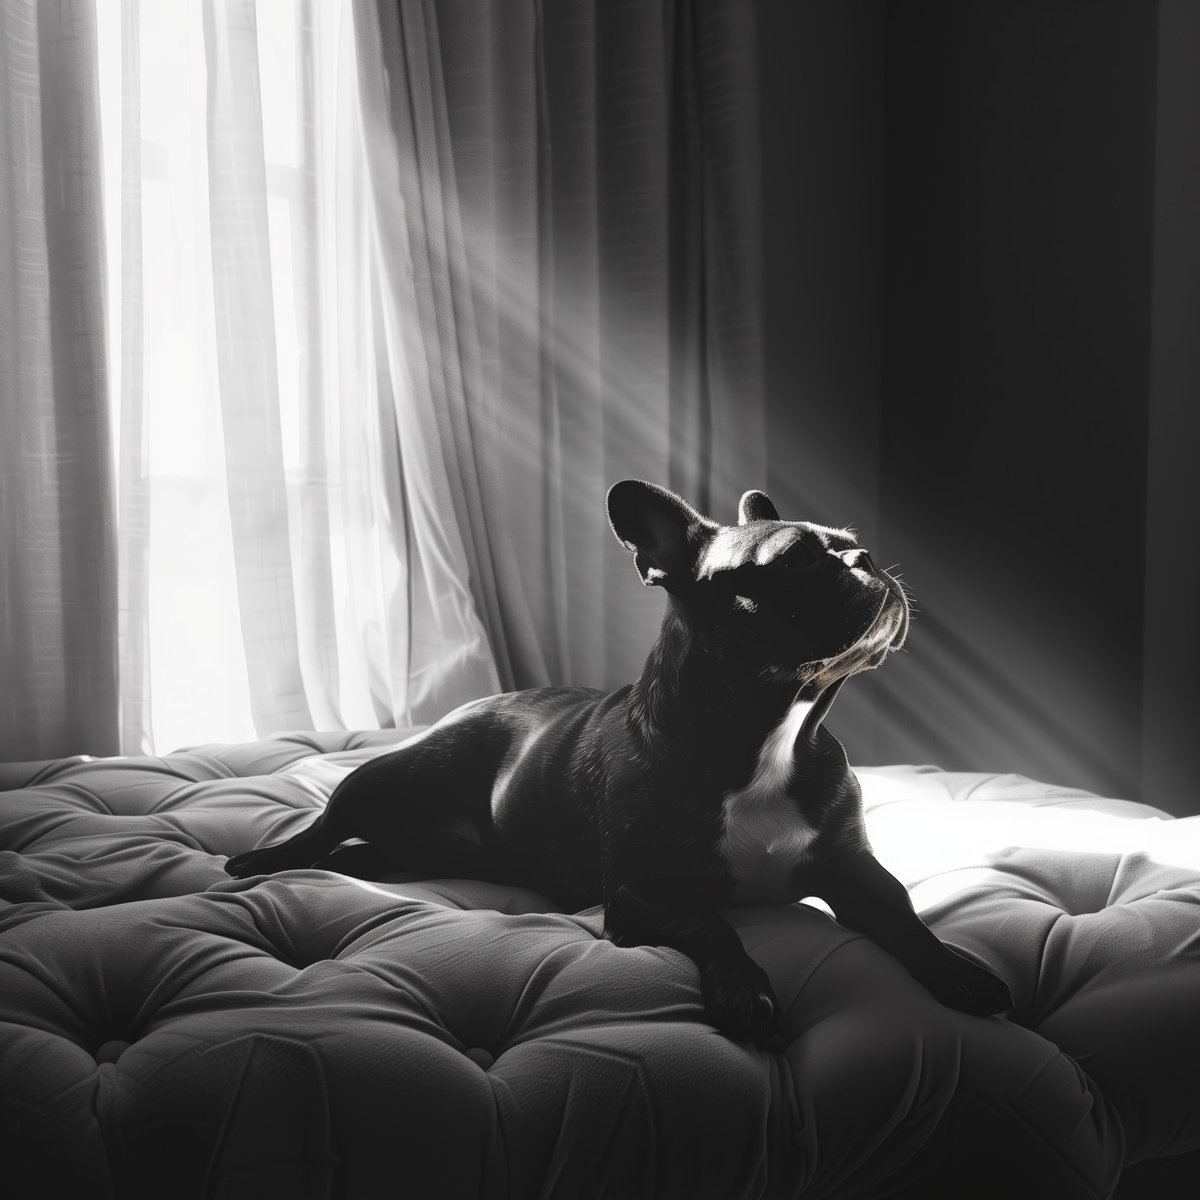 In Shadows and Sunbeams

#BlackAndWhitePhotography #FrenchBulldog #SereneMoments #PetPortraits